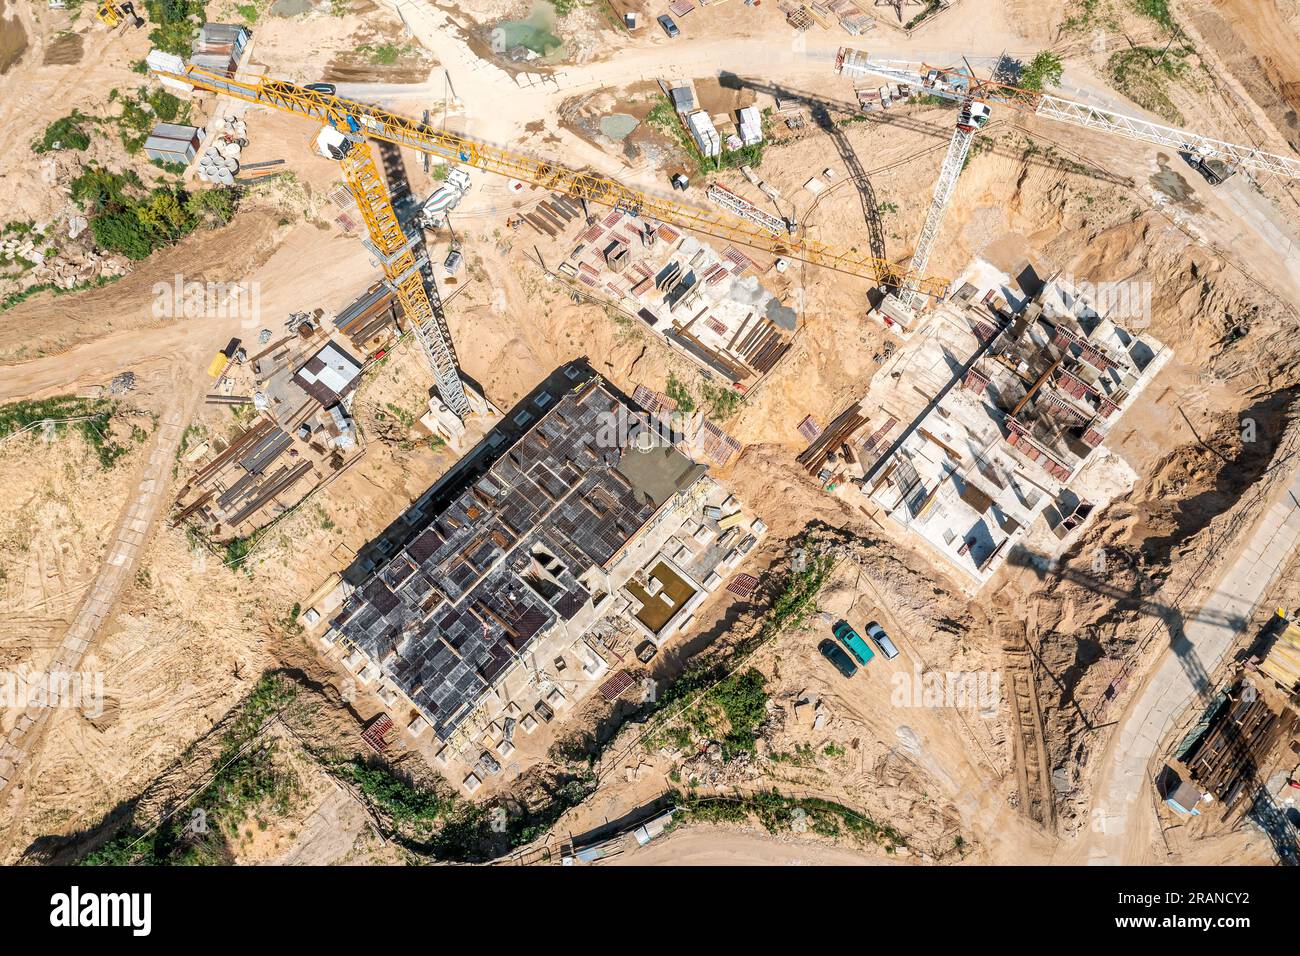 Bau von Stahlbetonfundamenten für Hochhäuser. Luftbild, Draufsicht. Stockfoto